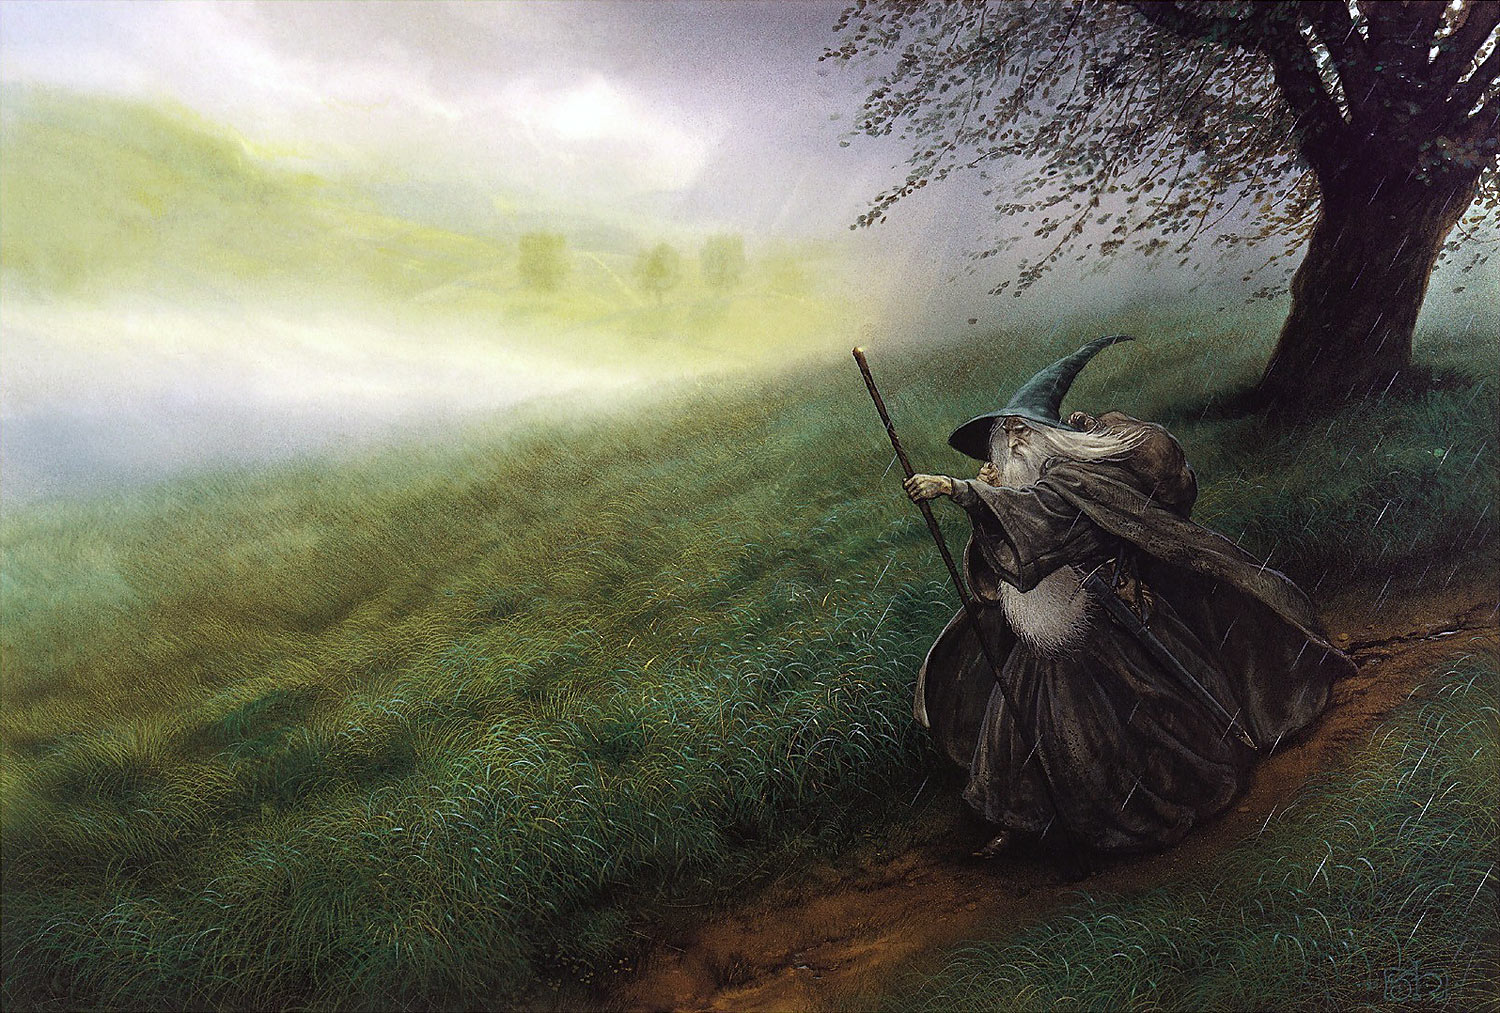 John Howe | Le Seigneur des Anneaux | Gandalf the Grey